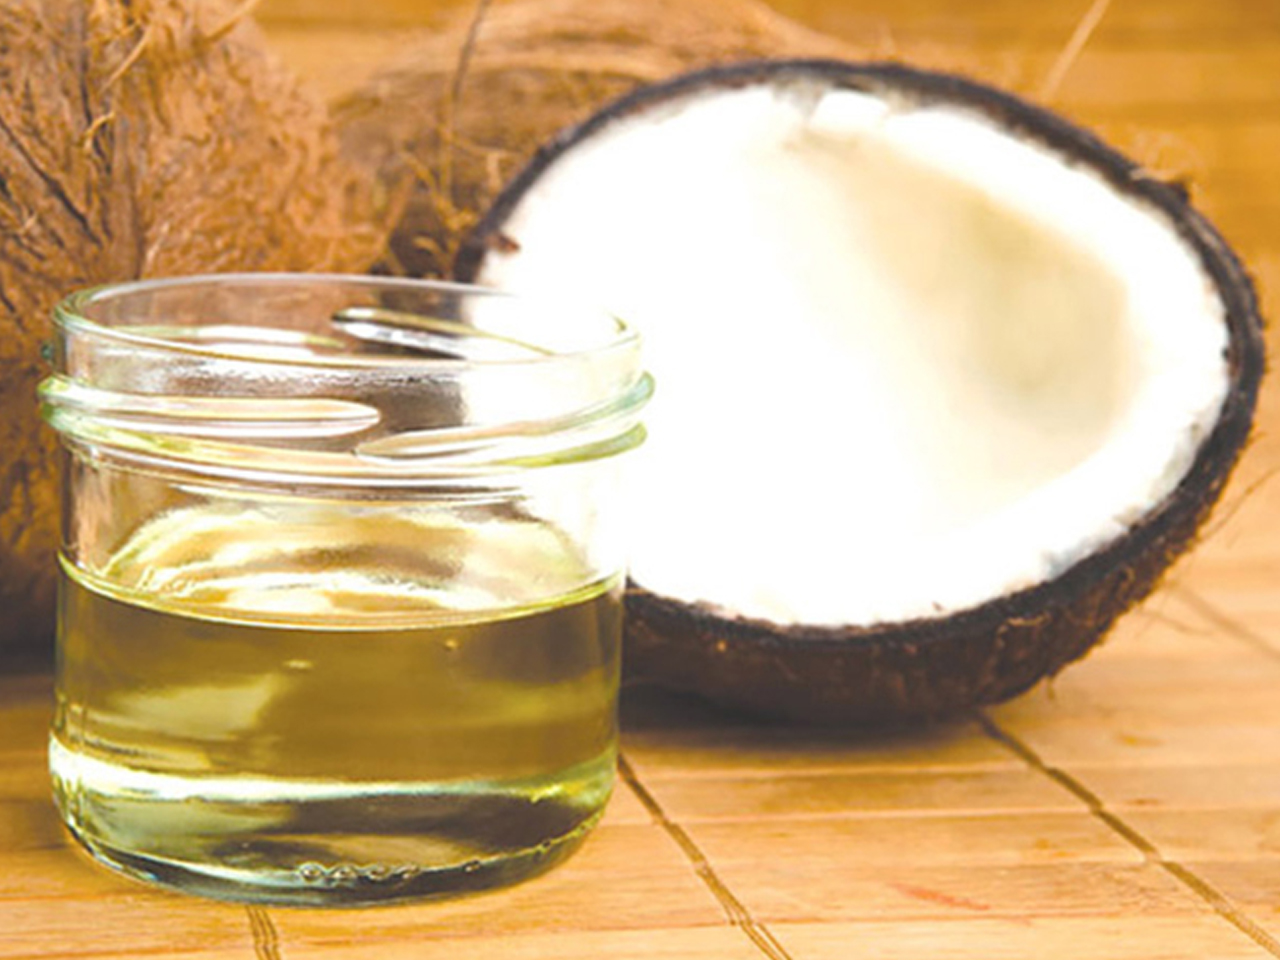 Cara mengobati komedo dengan minyak kelapa